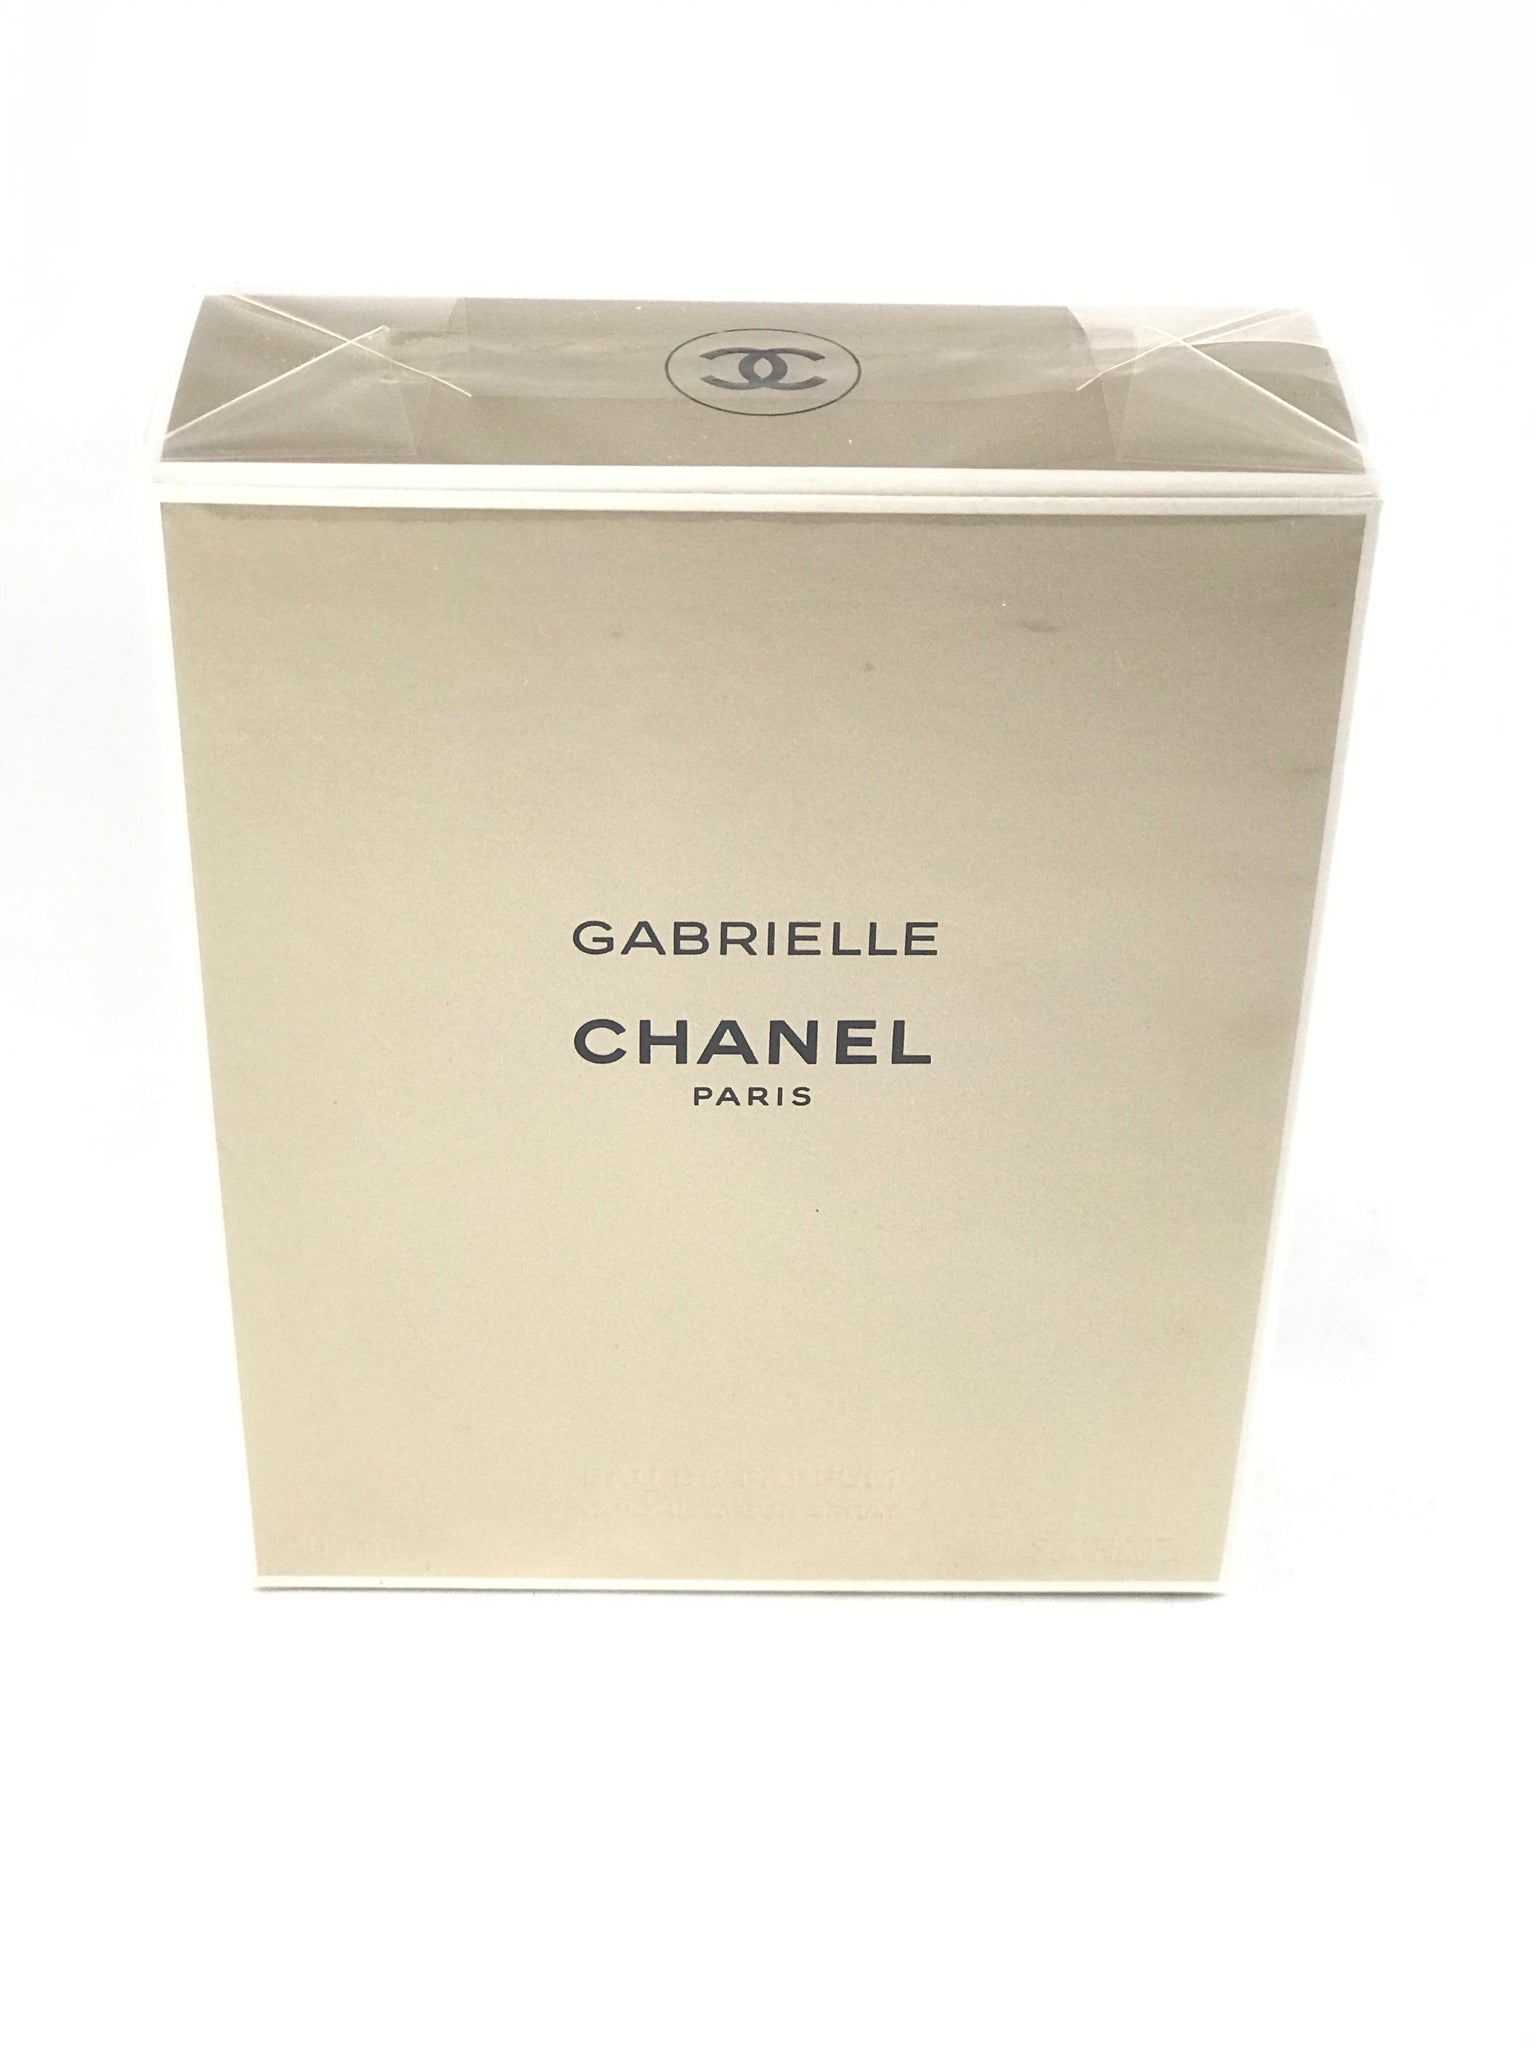 Chanel Gabrielle Essence Eau De Parfum Spray 100ml/3.4oz 